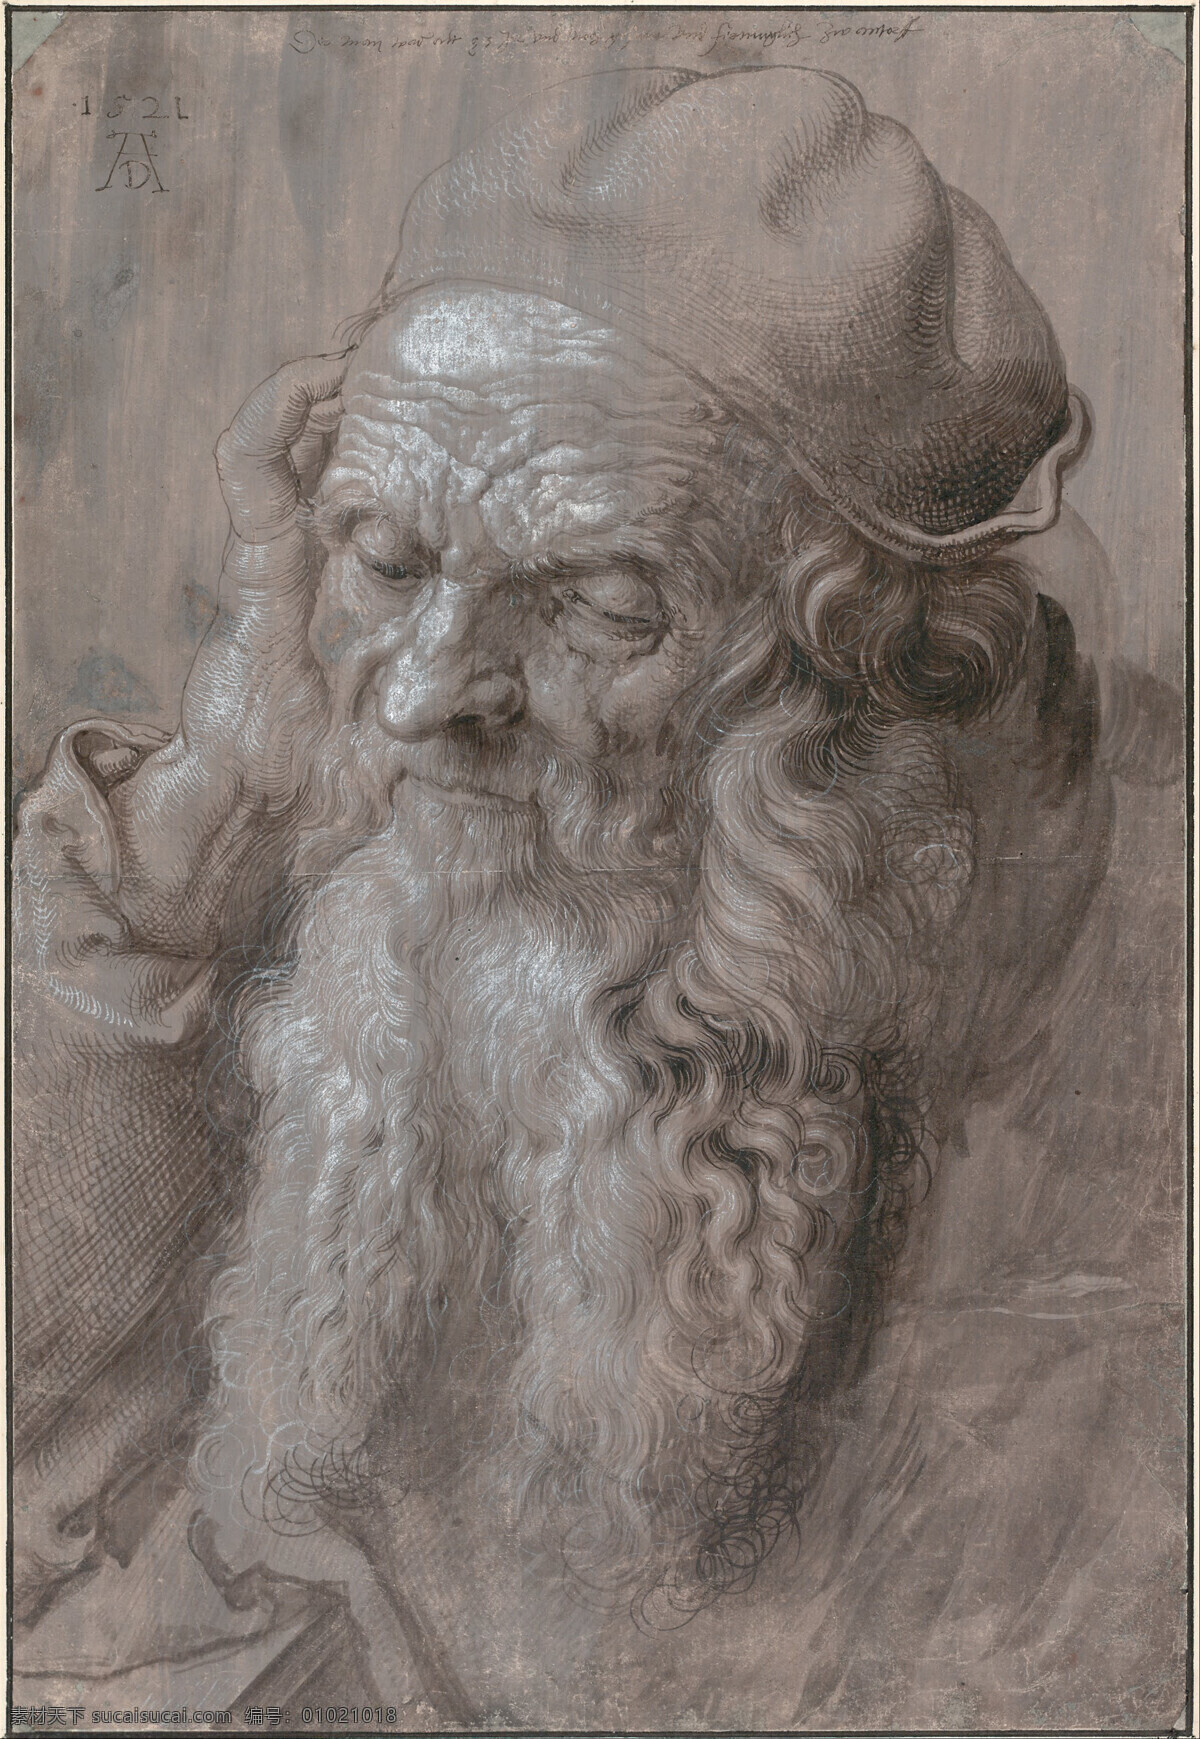 丢勒 老人头像素描 大师 素描 文艺复兴 黑白 美术绘画 文化艺术